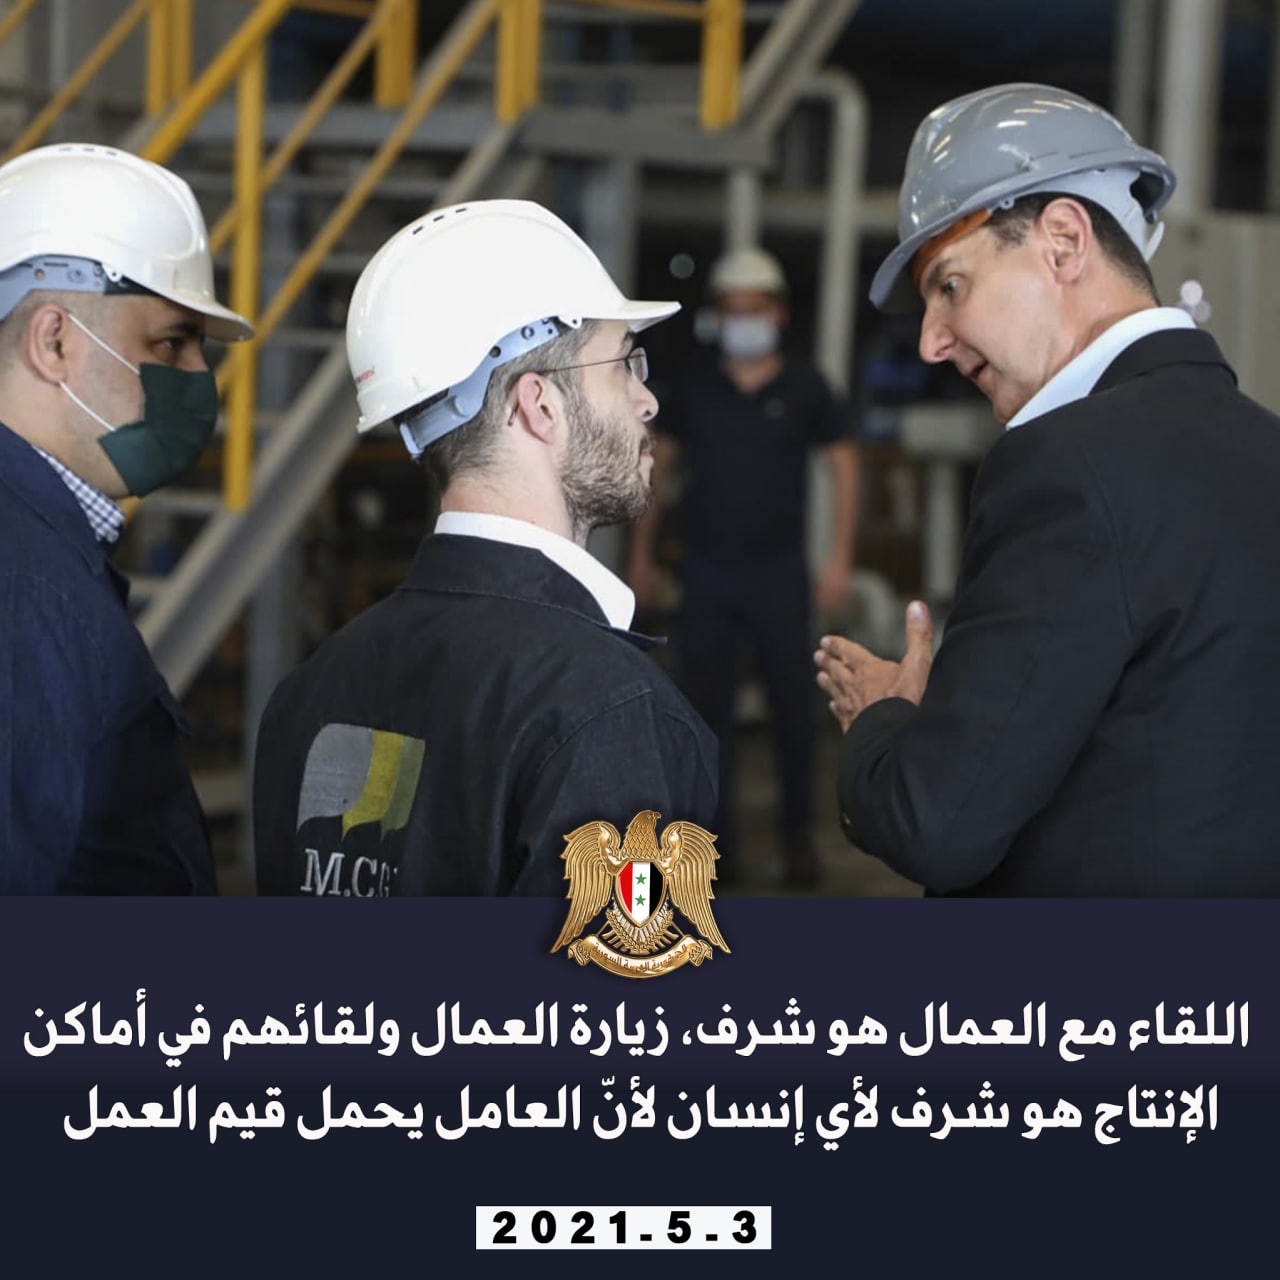 من زيارة الرئيس الأسد لعدد من المعامل والمنشآت في مدينة حسياء الصناعية